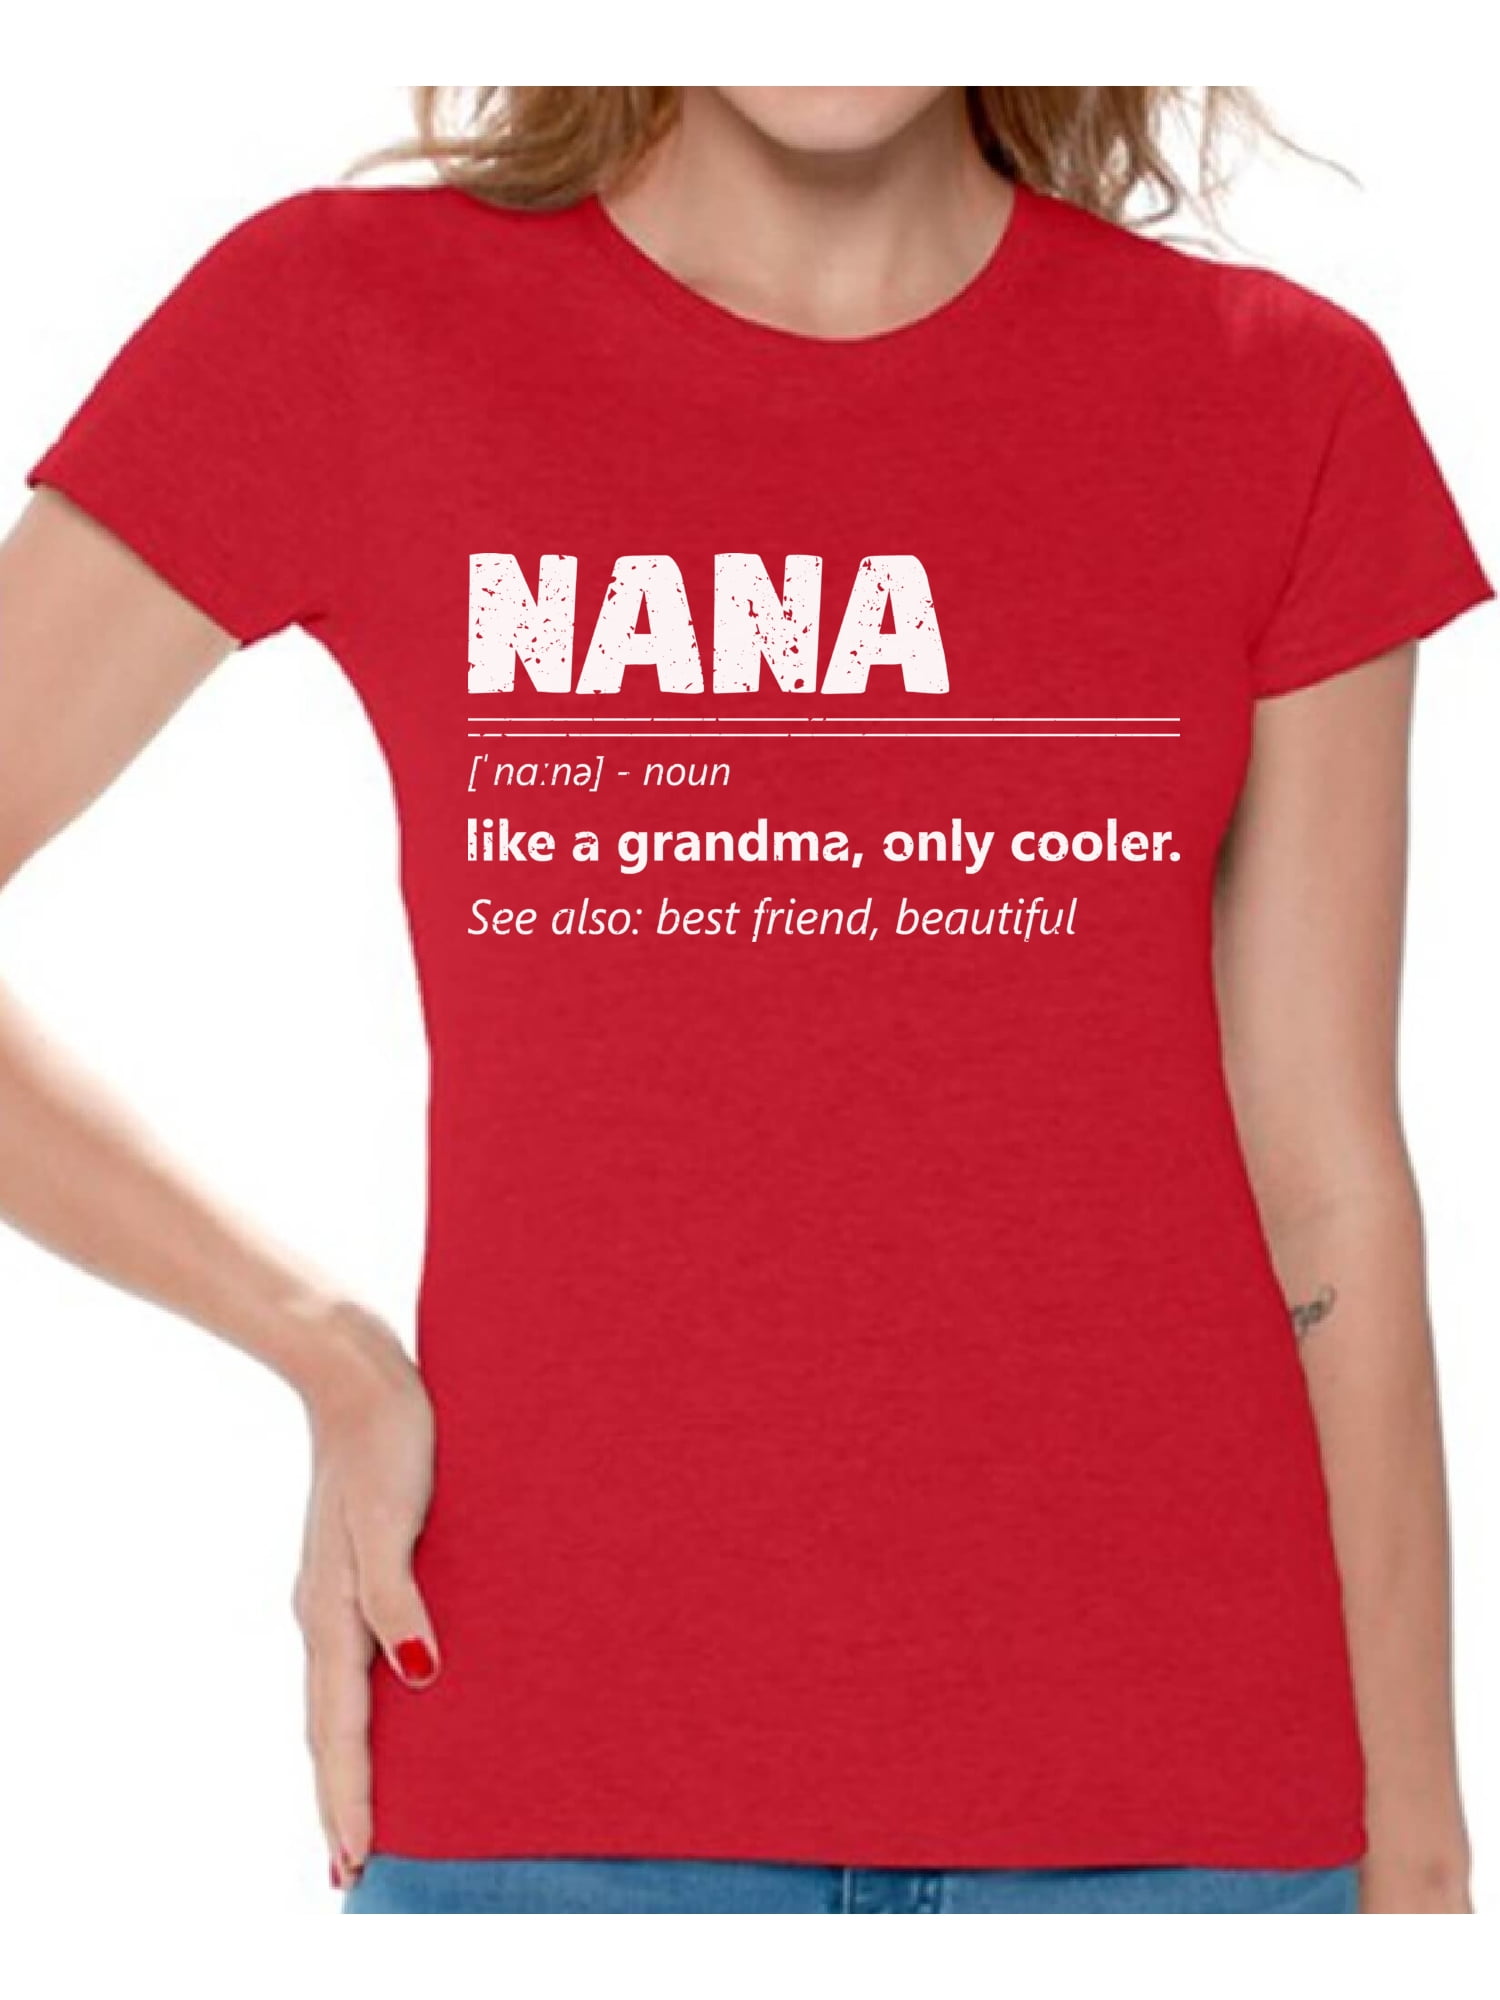 Nana Tee Cute Grandma T-Shirt Granny Shirt Gift For Grandma Nana Tee Shirt One Loved Nana T Shirt